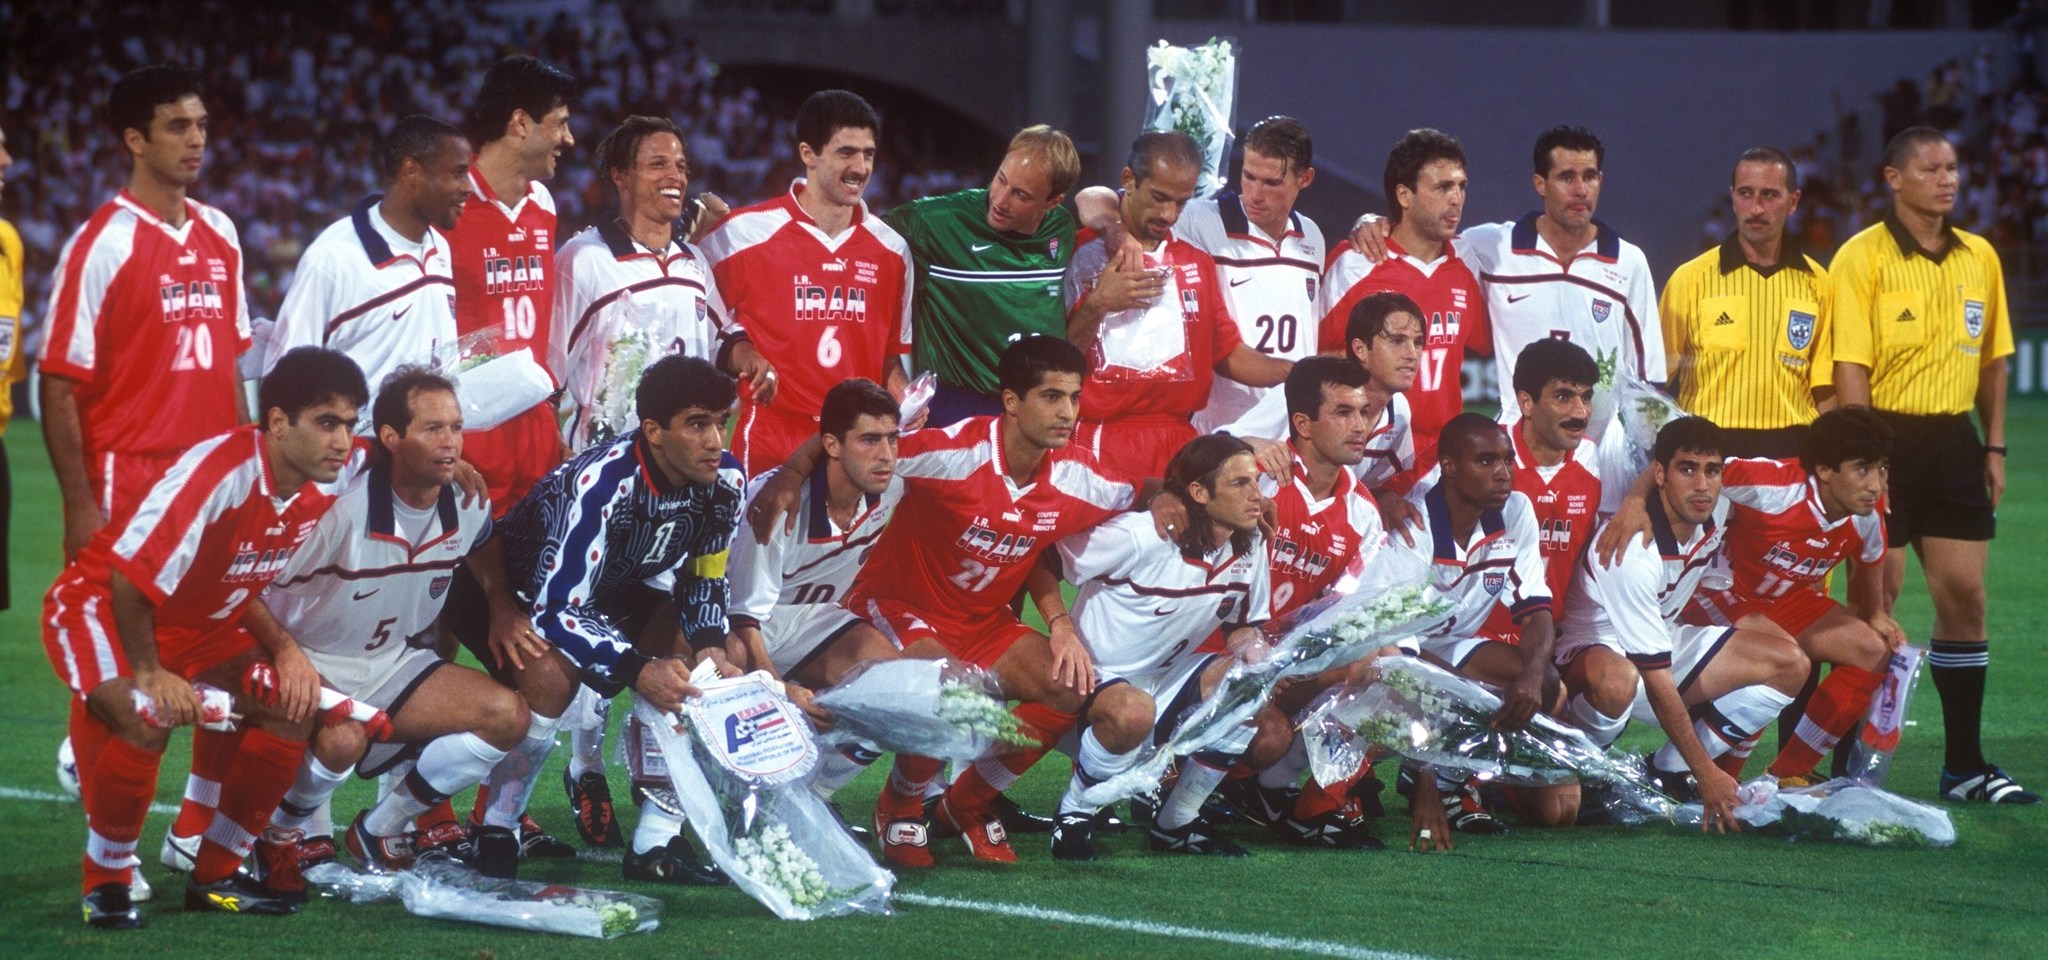 ‘Laga Terbesar Abad Ini’, Menganang Laga Amerika Serikat dan Iran di Piala Dunia 1998